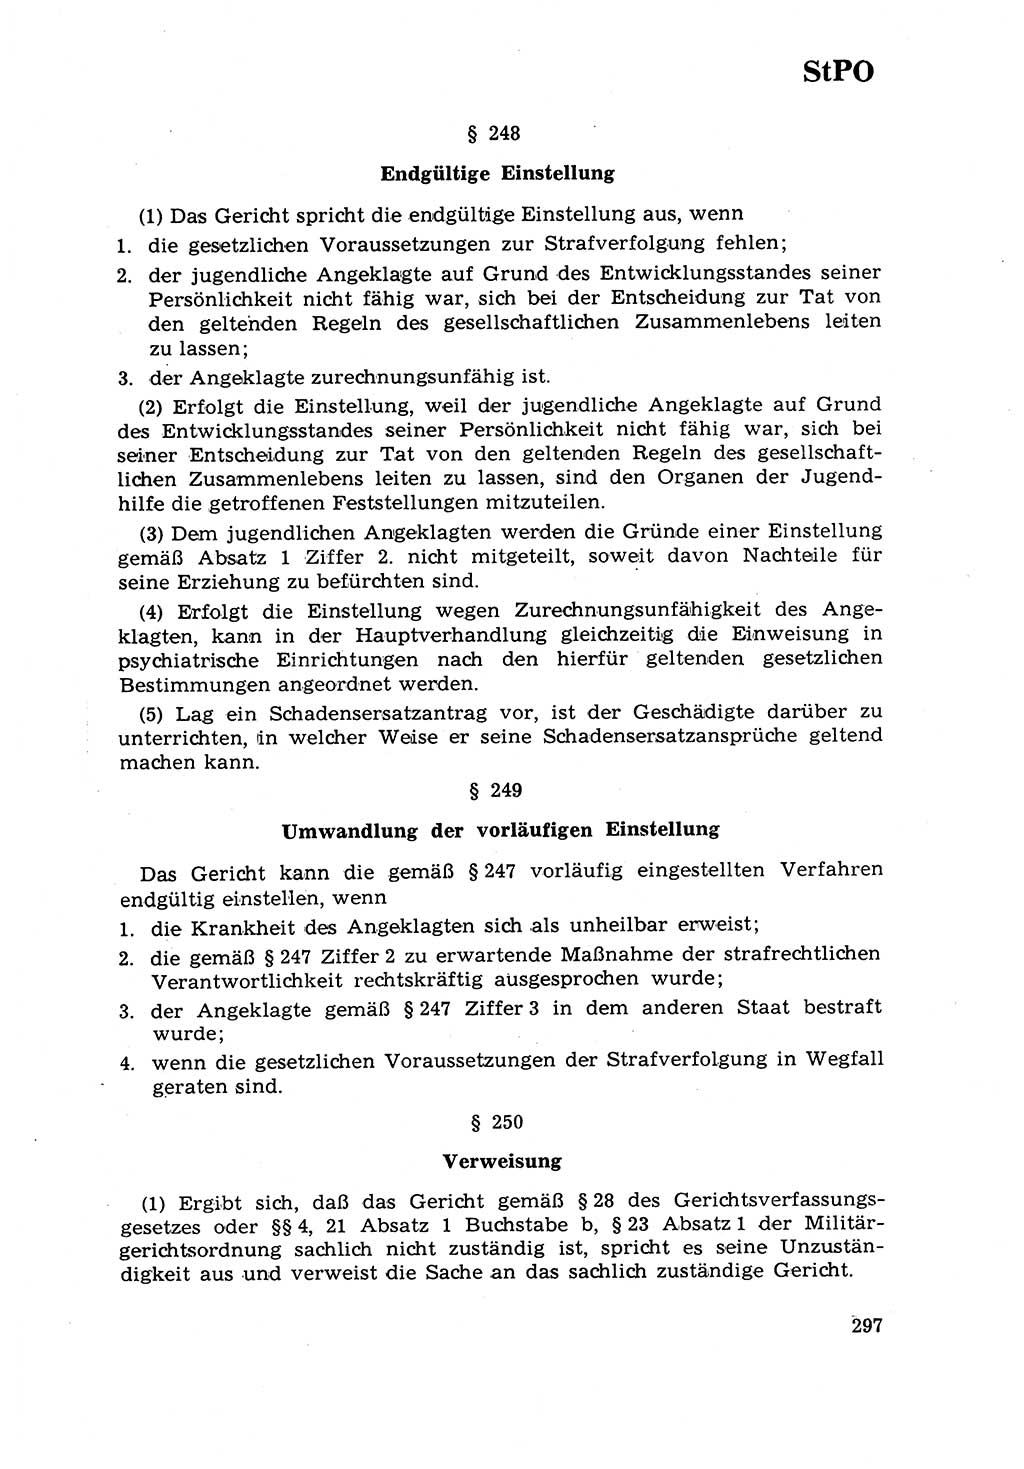 Strafrecht [Deutsche Demokratische Republik (DDR)] 1968, Seite 297 (Strafr. DDR 1968, S. 297)